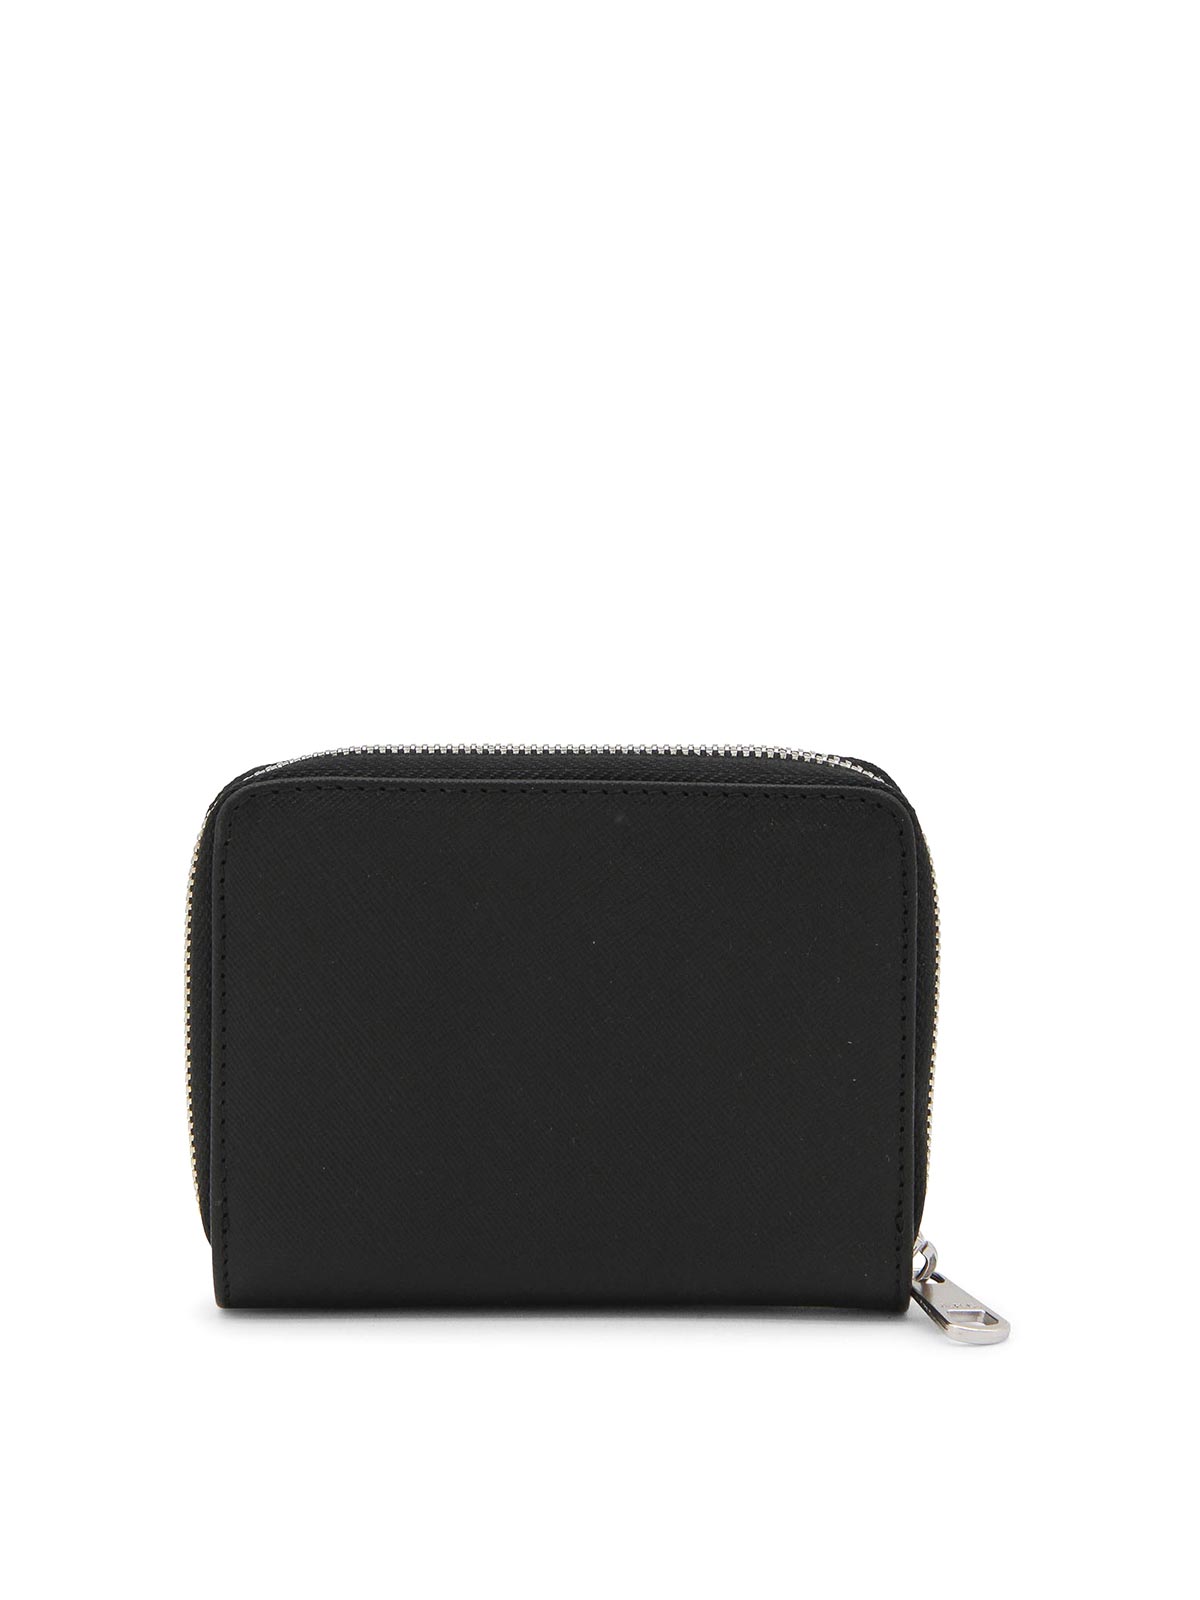 Shop Apc Black Leather Wallet